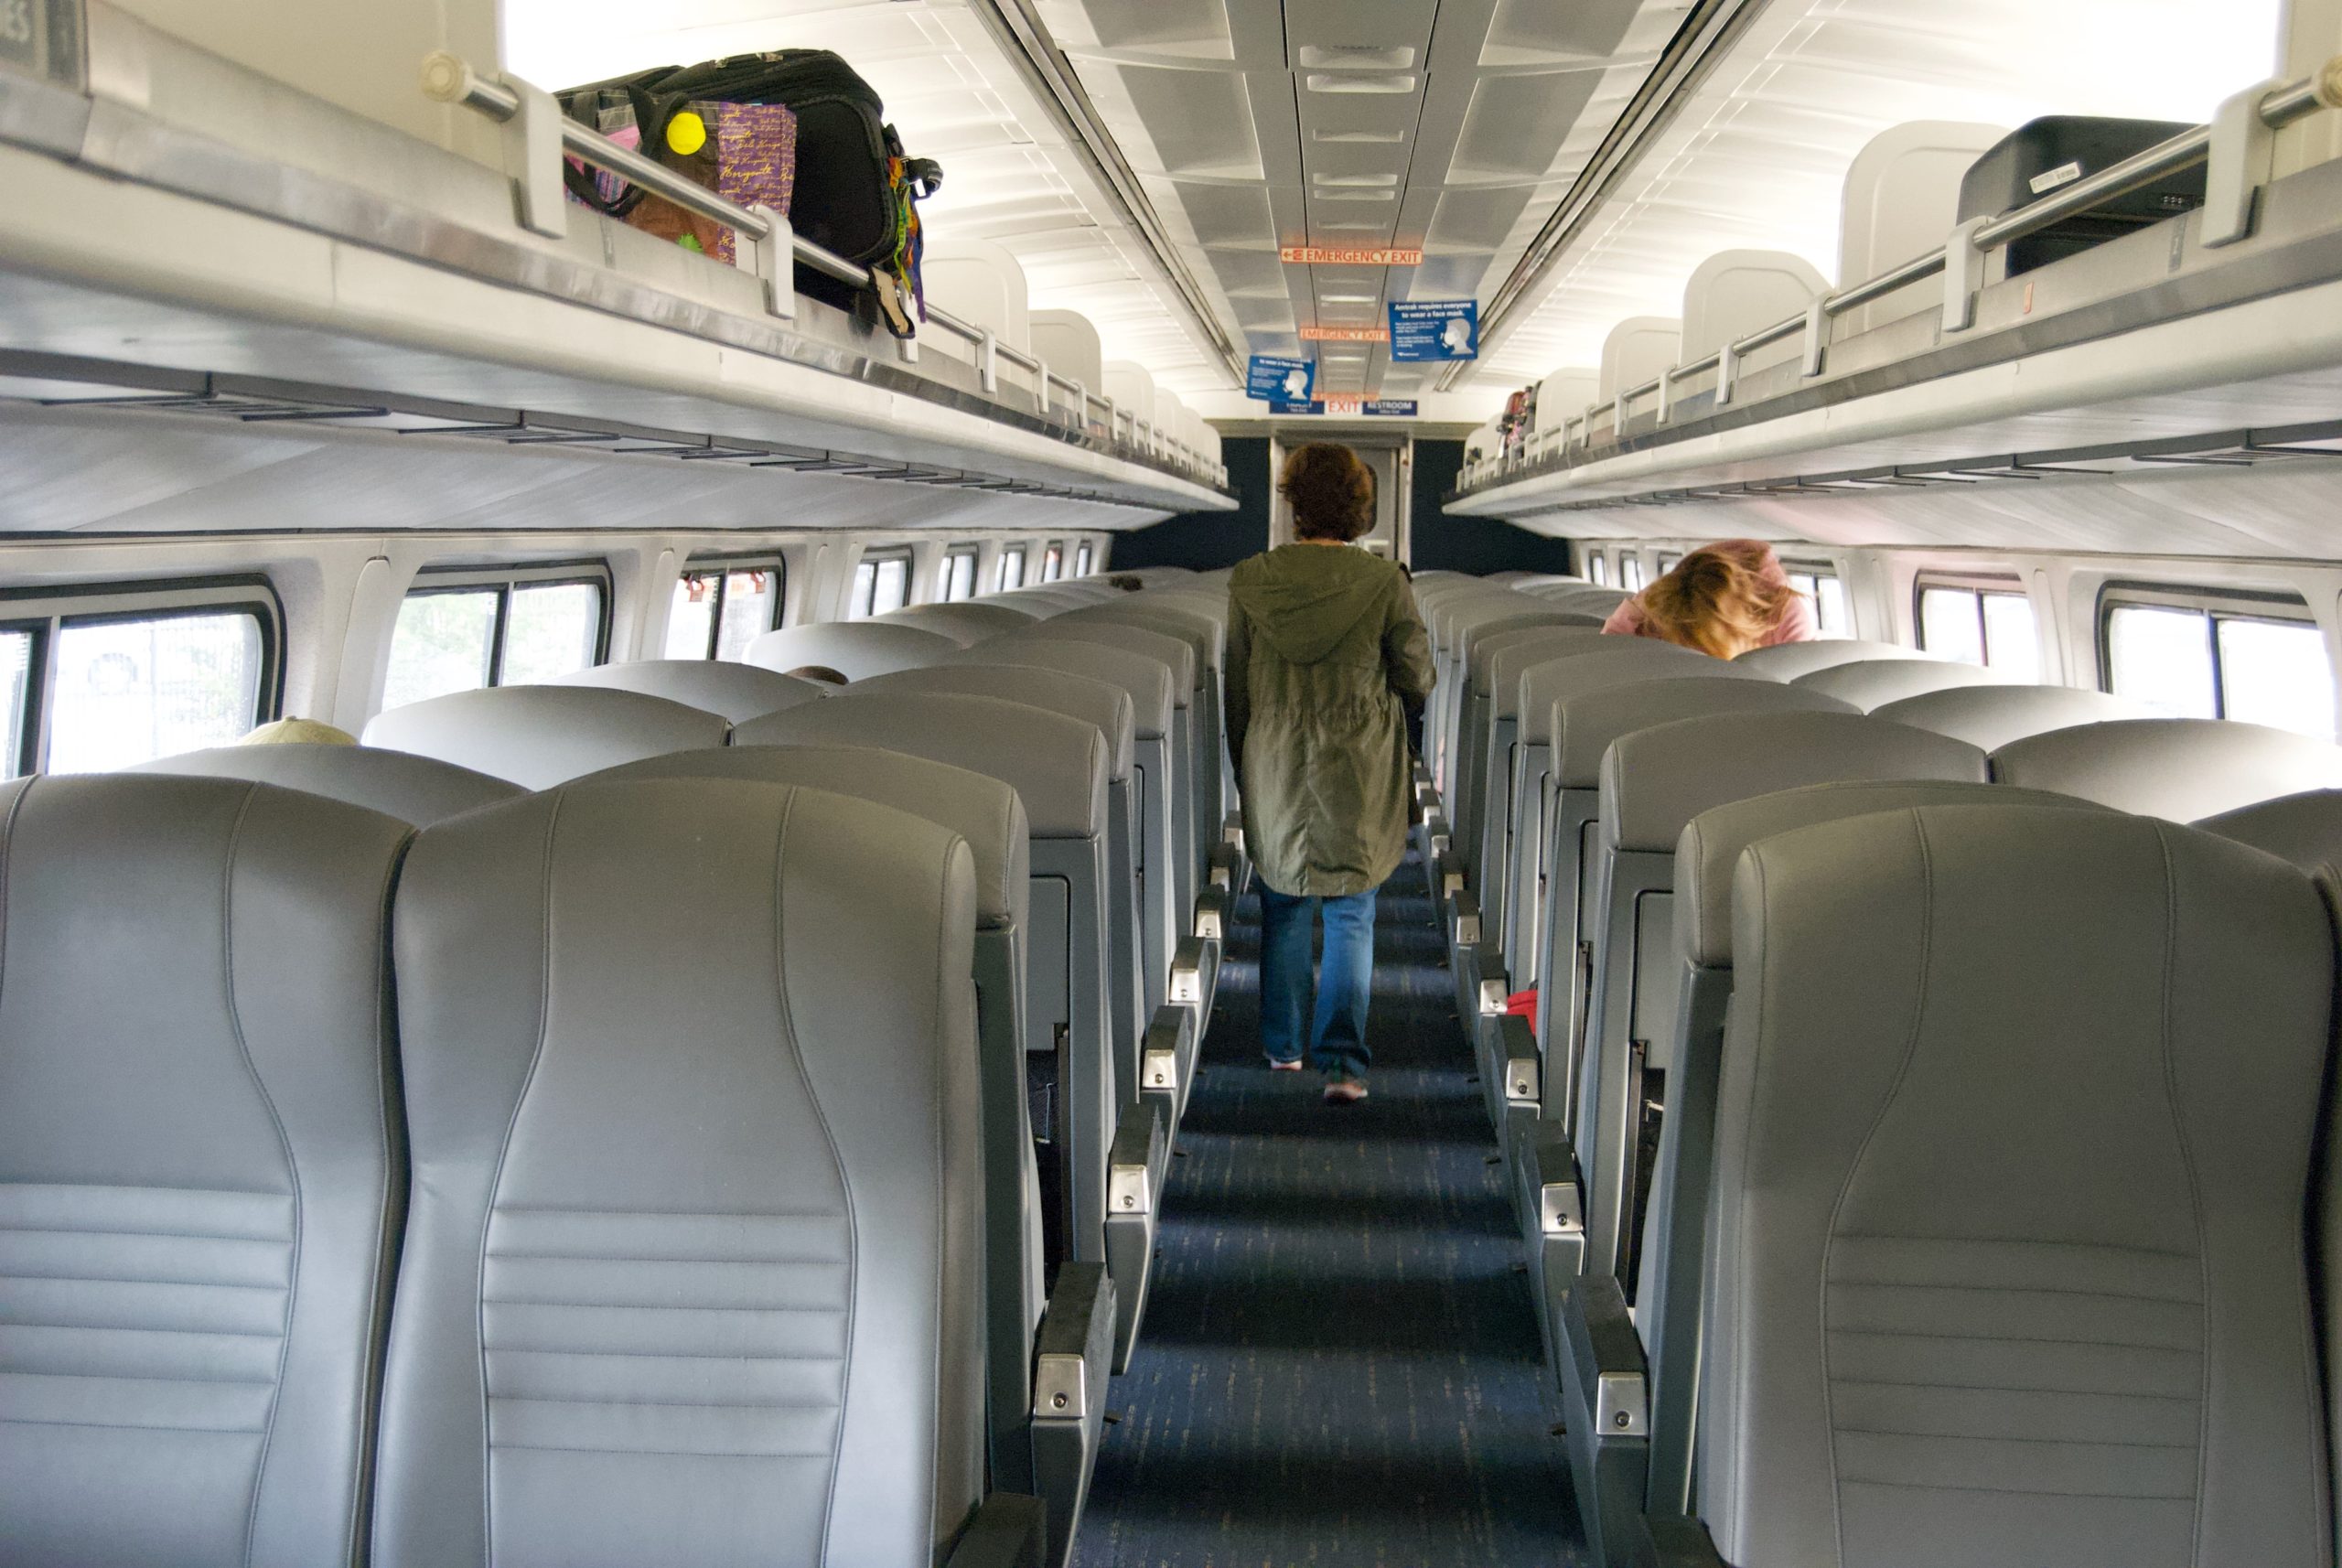 amtrak trains interior